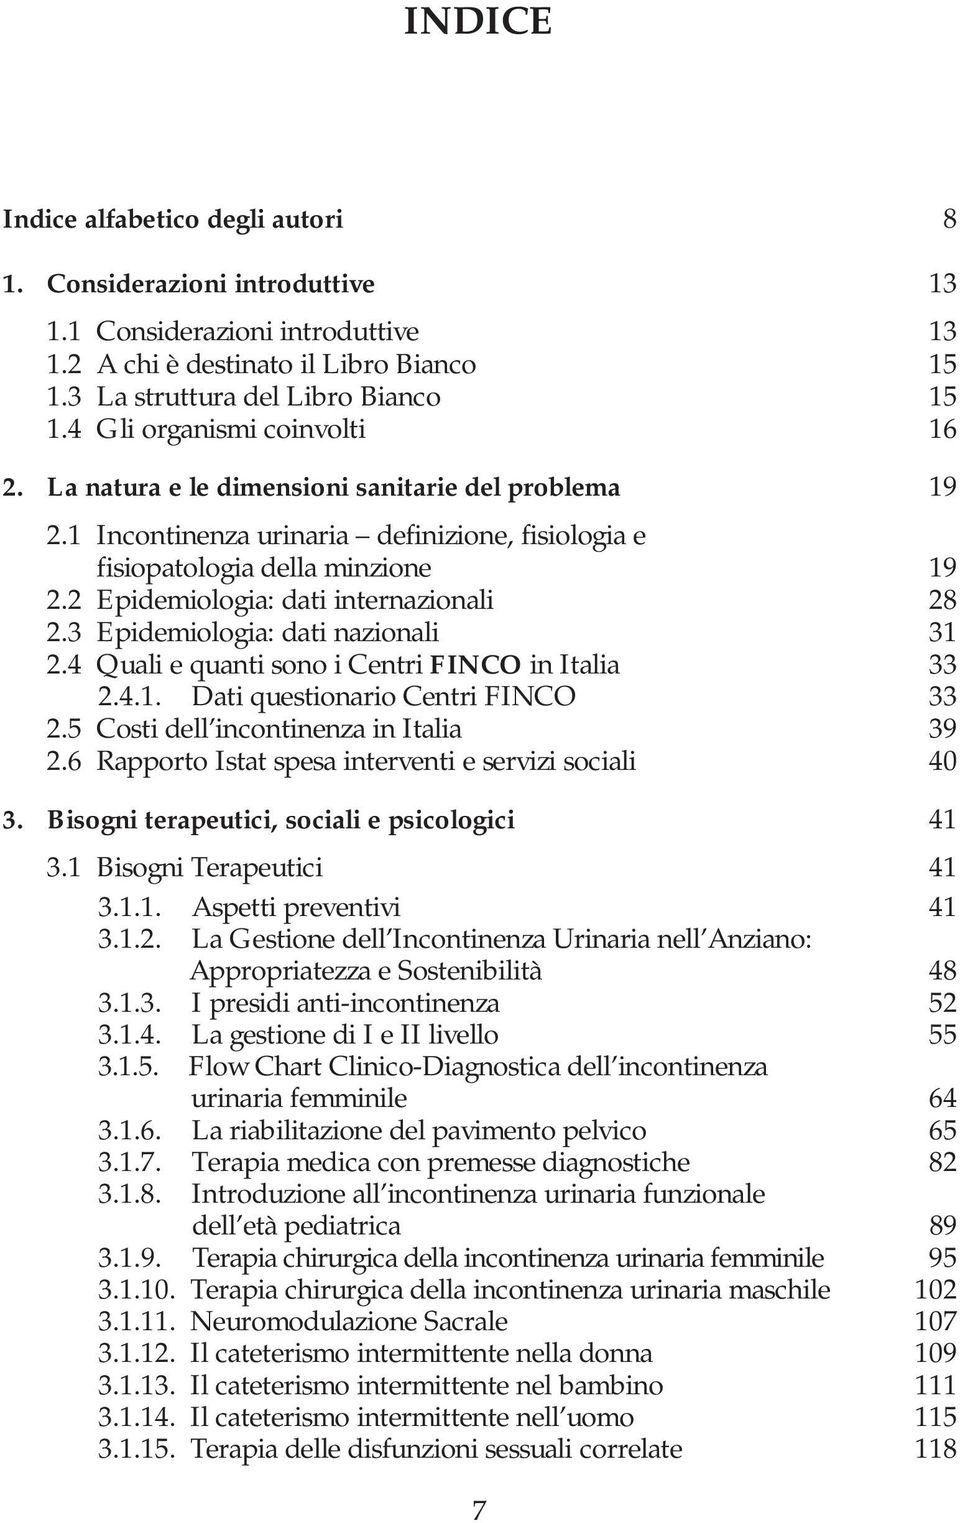 2 Epidemiologia: dati internazionali 28 2.3 Epidemiologia: dati nazionali 31 2.4 Quali e quanti sono i Centri FINCO in Italia 33 2.4.1. Dati questionario Centri FINCO 33 2.